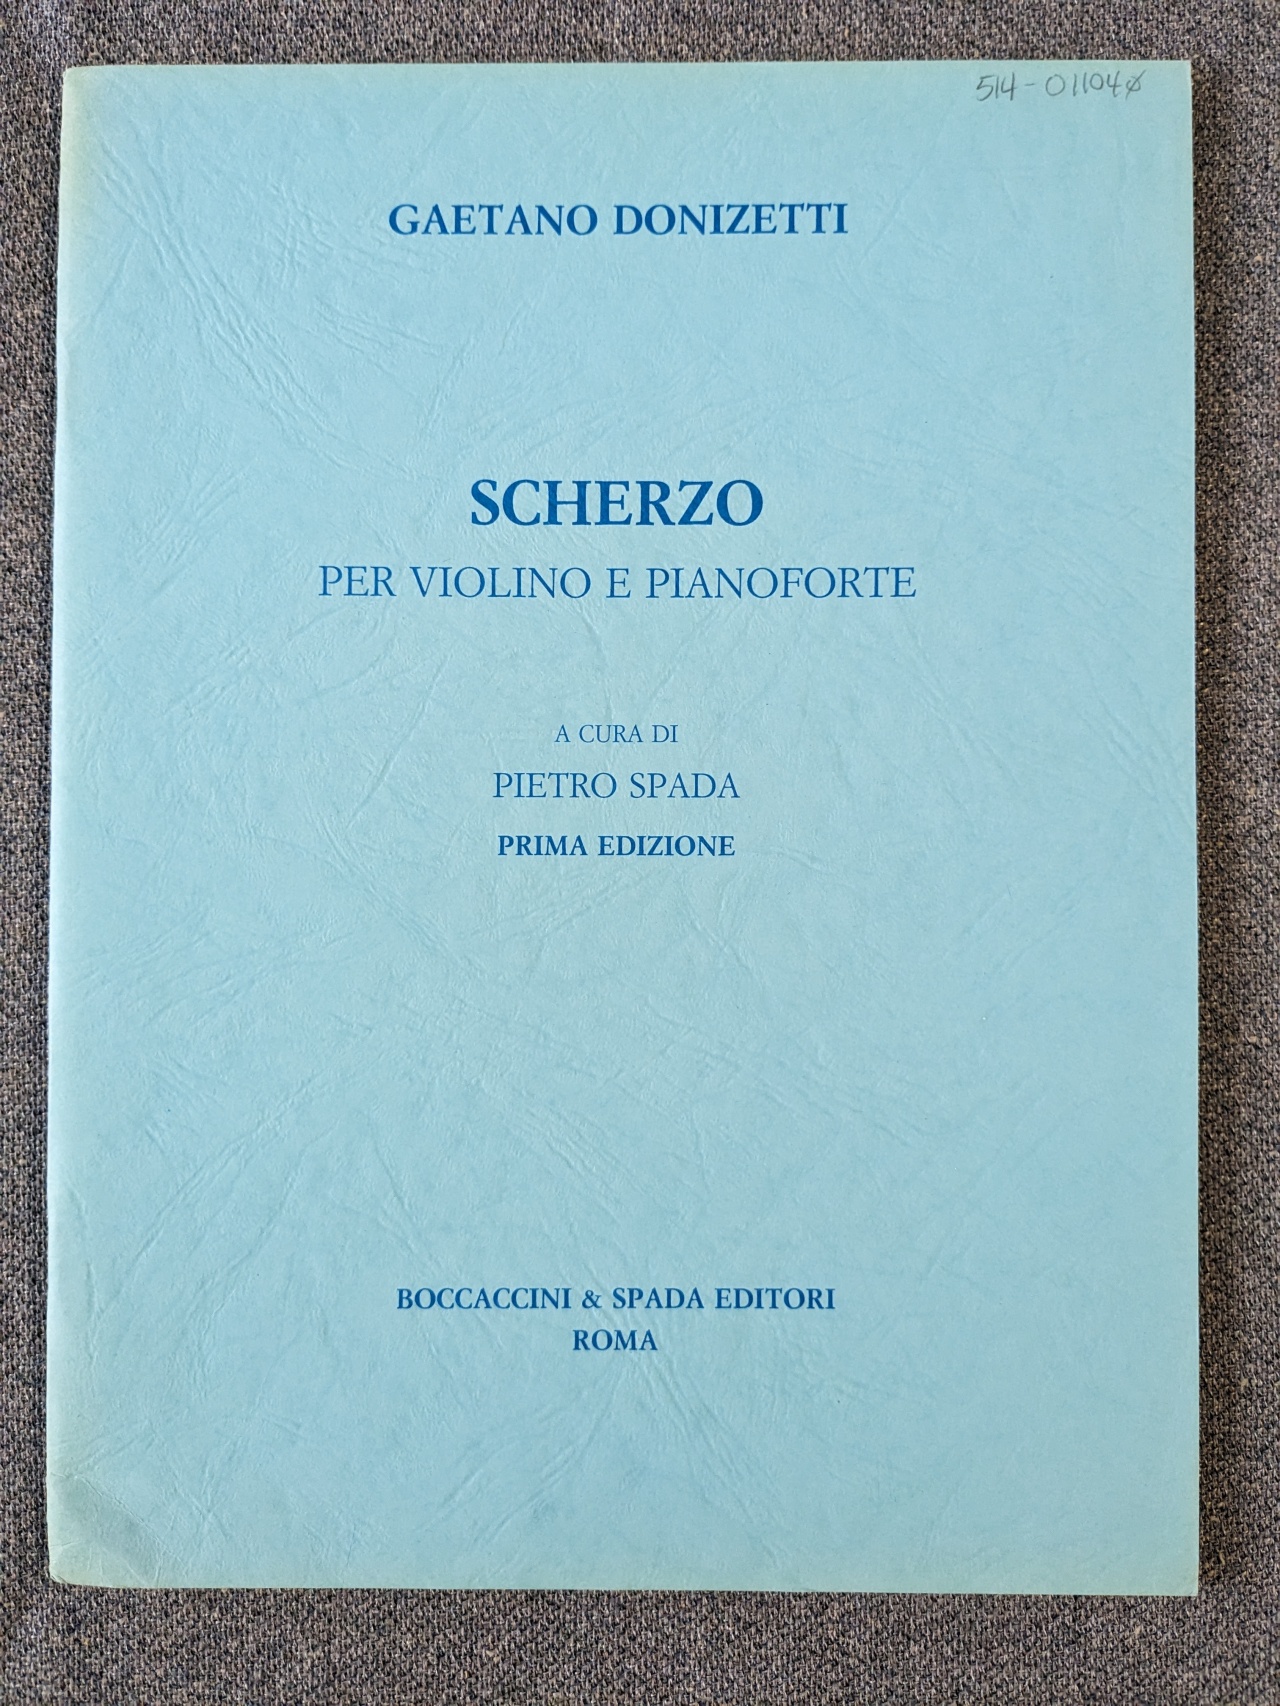 Gaetano Donizetti Scherzo For Violin & Piano Ed. Pietro Spada - Click Image to Close